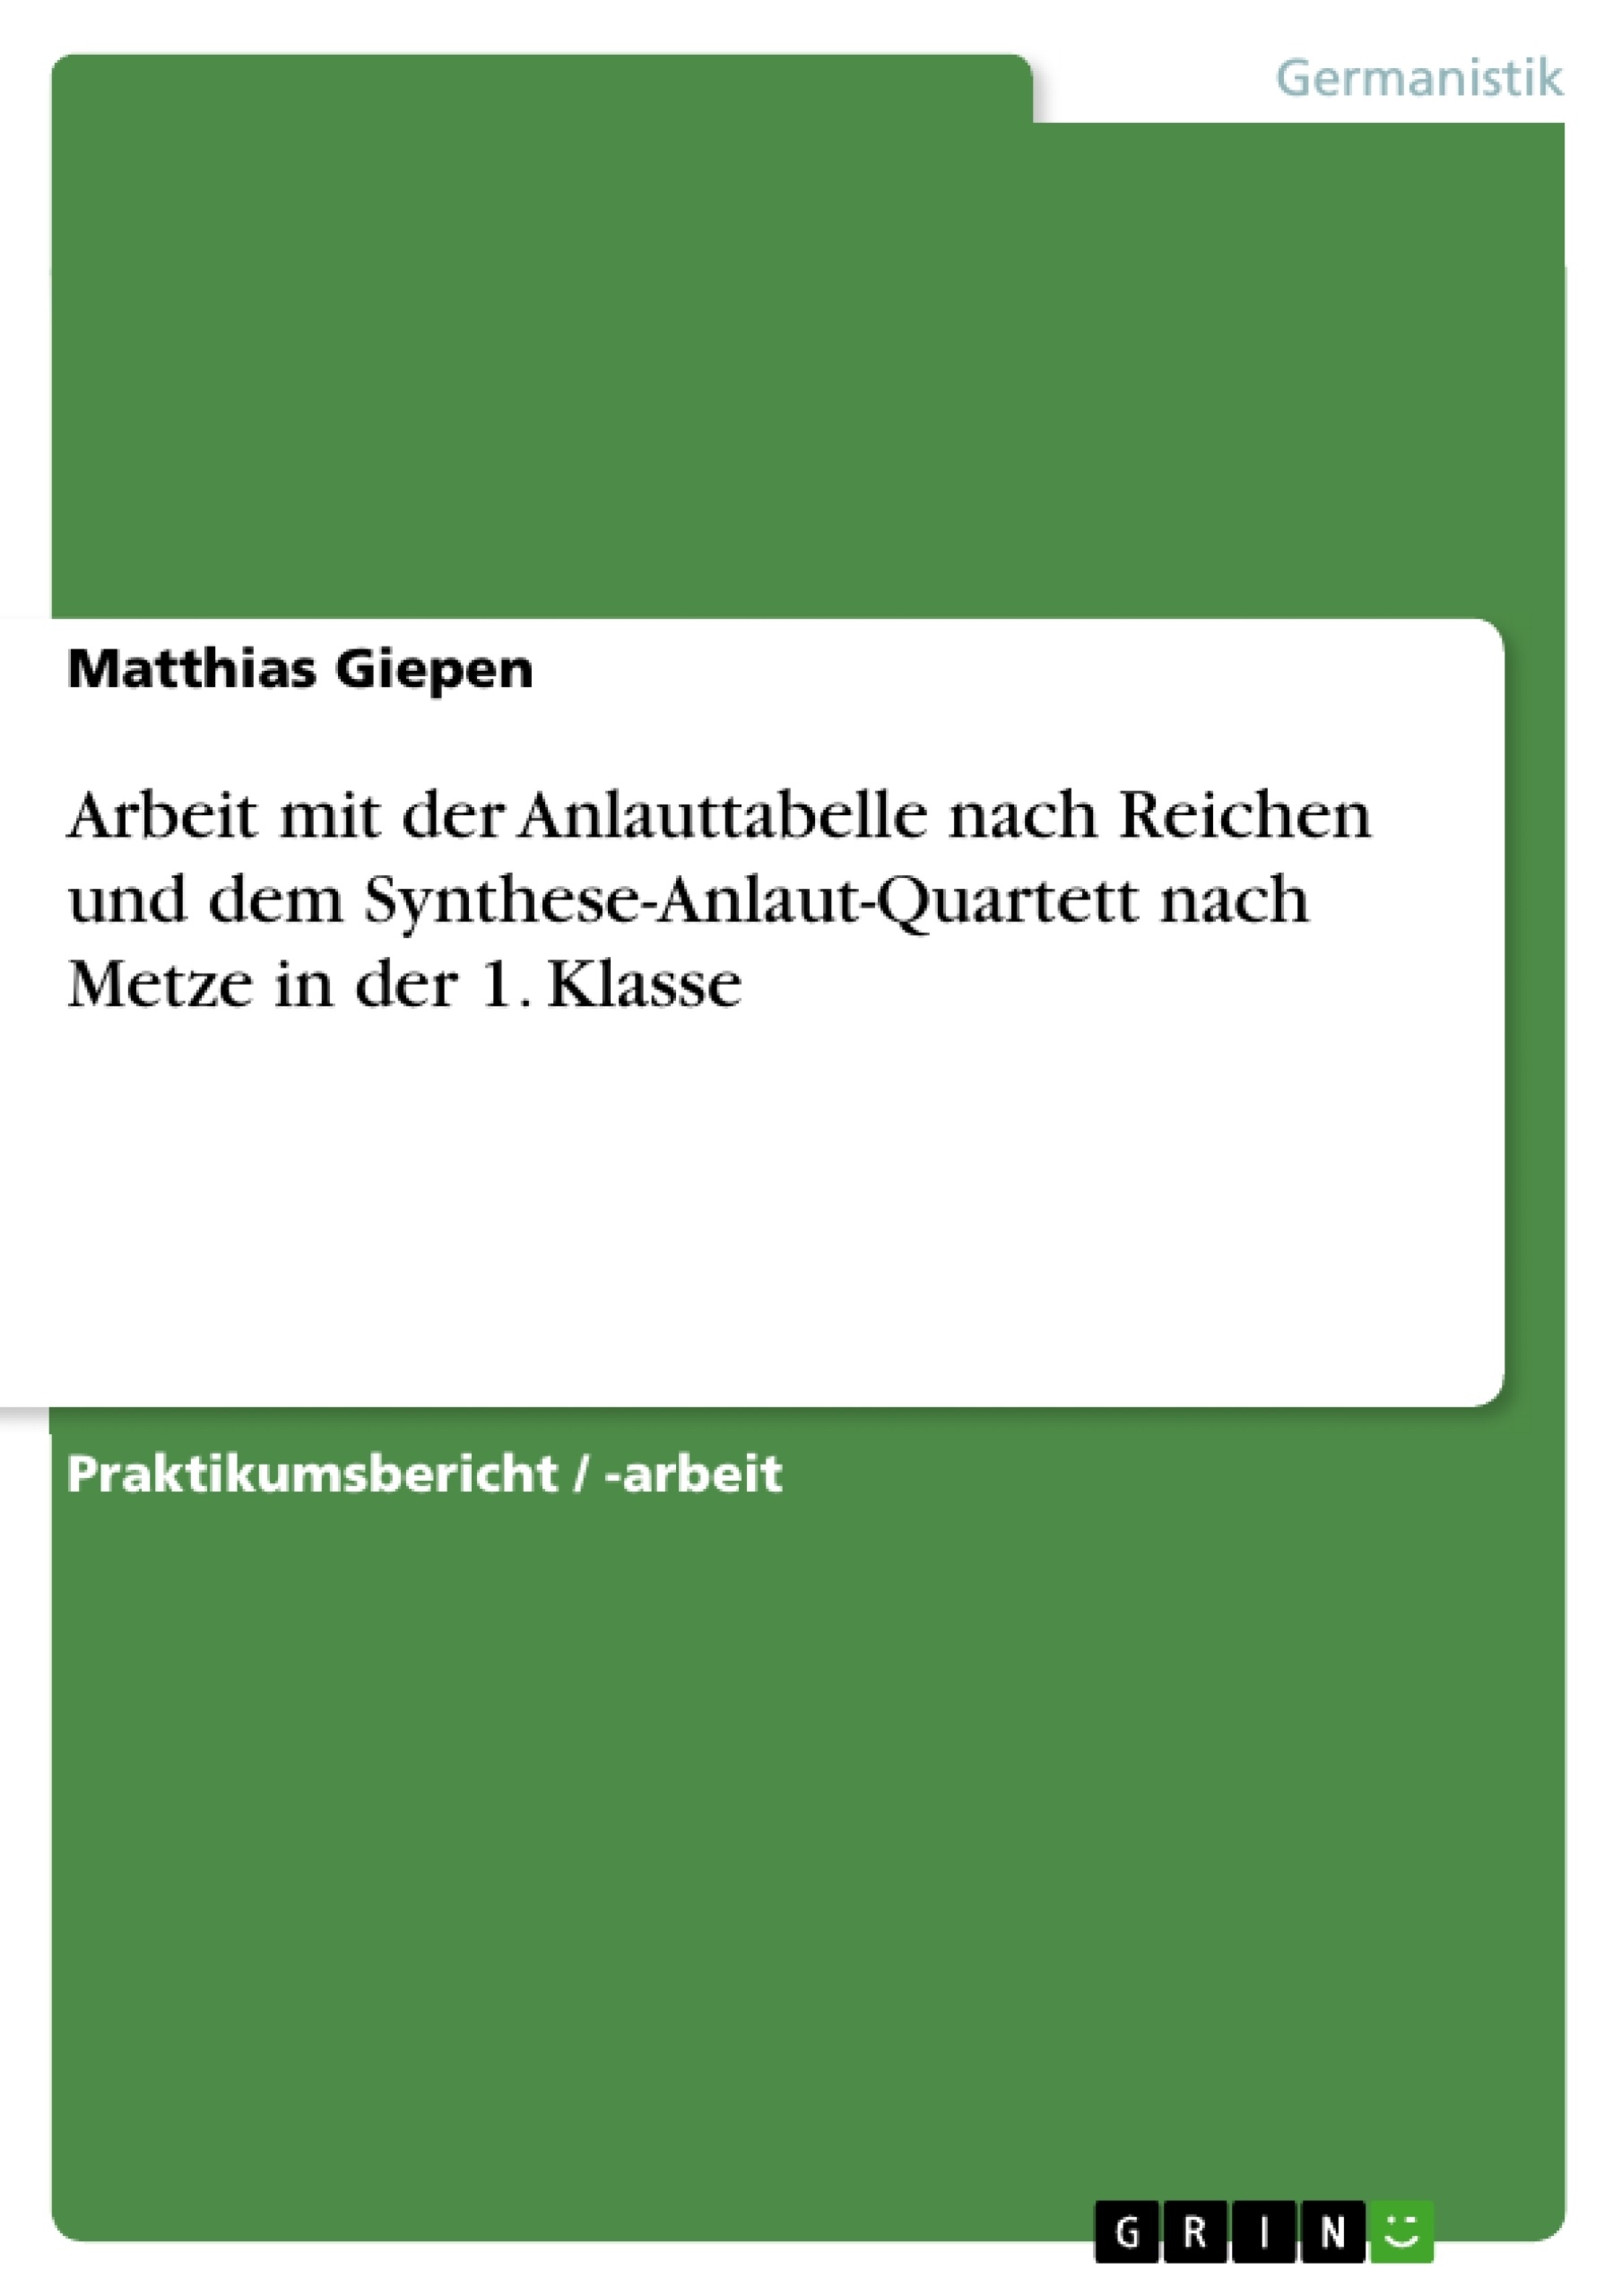 Title: Arbeit mit der Anlauttabelle nach Reichen und dem Synthese-Anlaut-Quartett nach Metze in der 1. Klasse